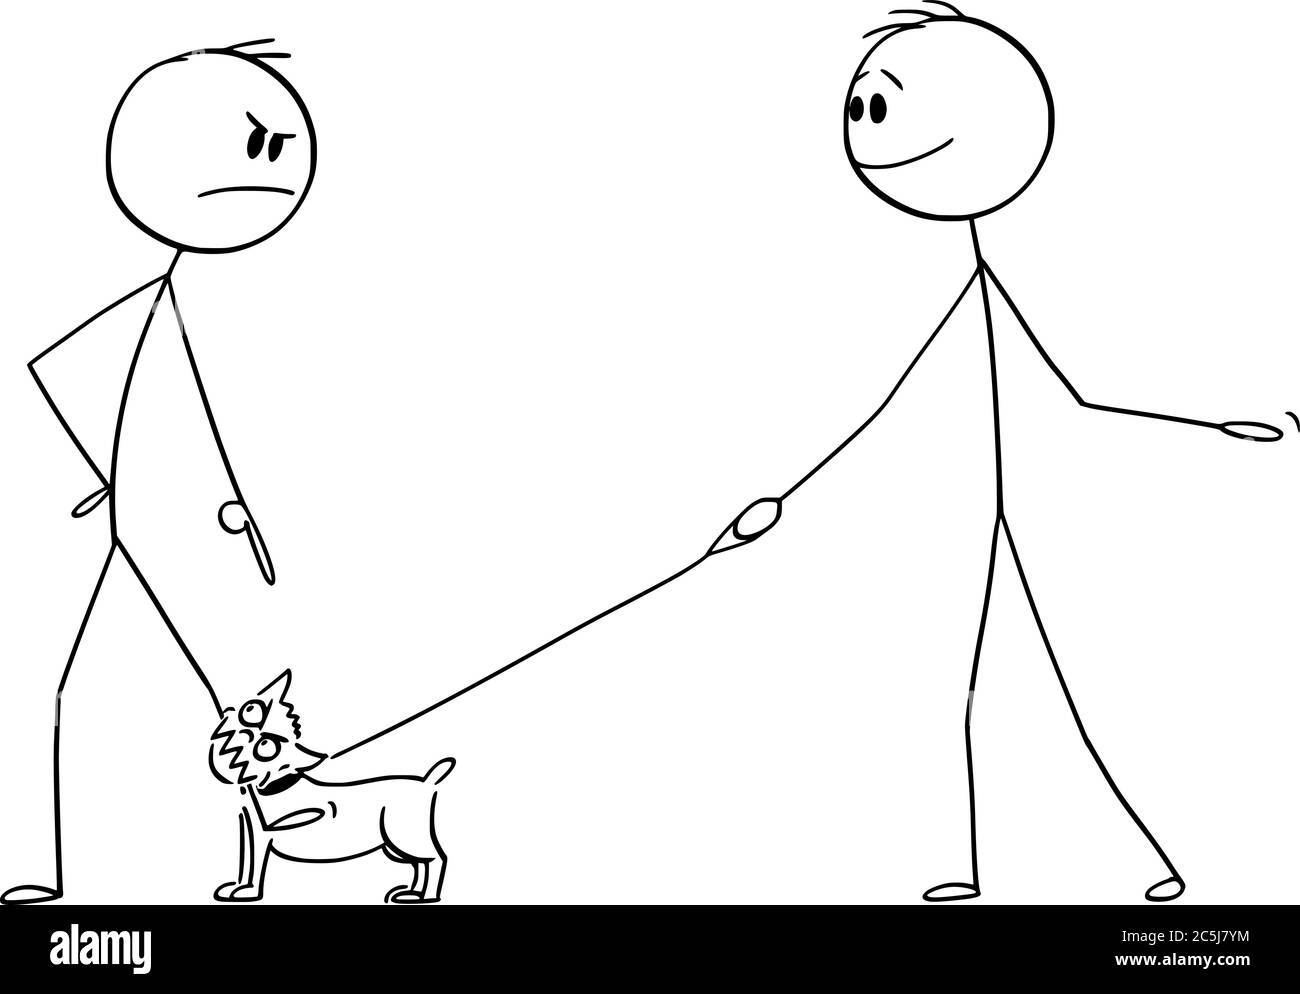 Vektor Cartoon Stick Figur Zeichnung konzeptionelle Illustration von wütenden Mann mit kleinen aggressiven Hund oder chihuahua an der Leine oder Bleibiss auf sein Bein. Der Besitzer lächelt. Stock Vektor